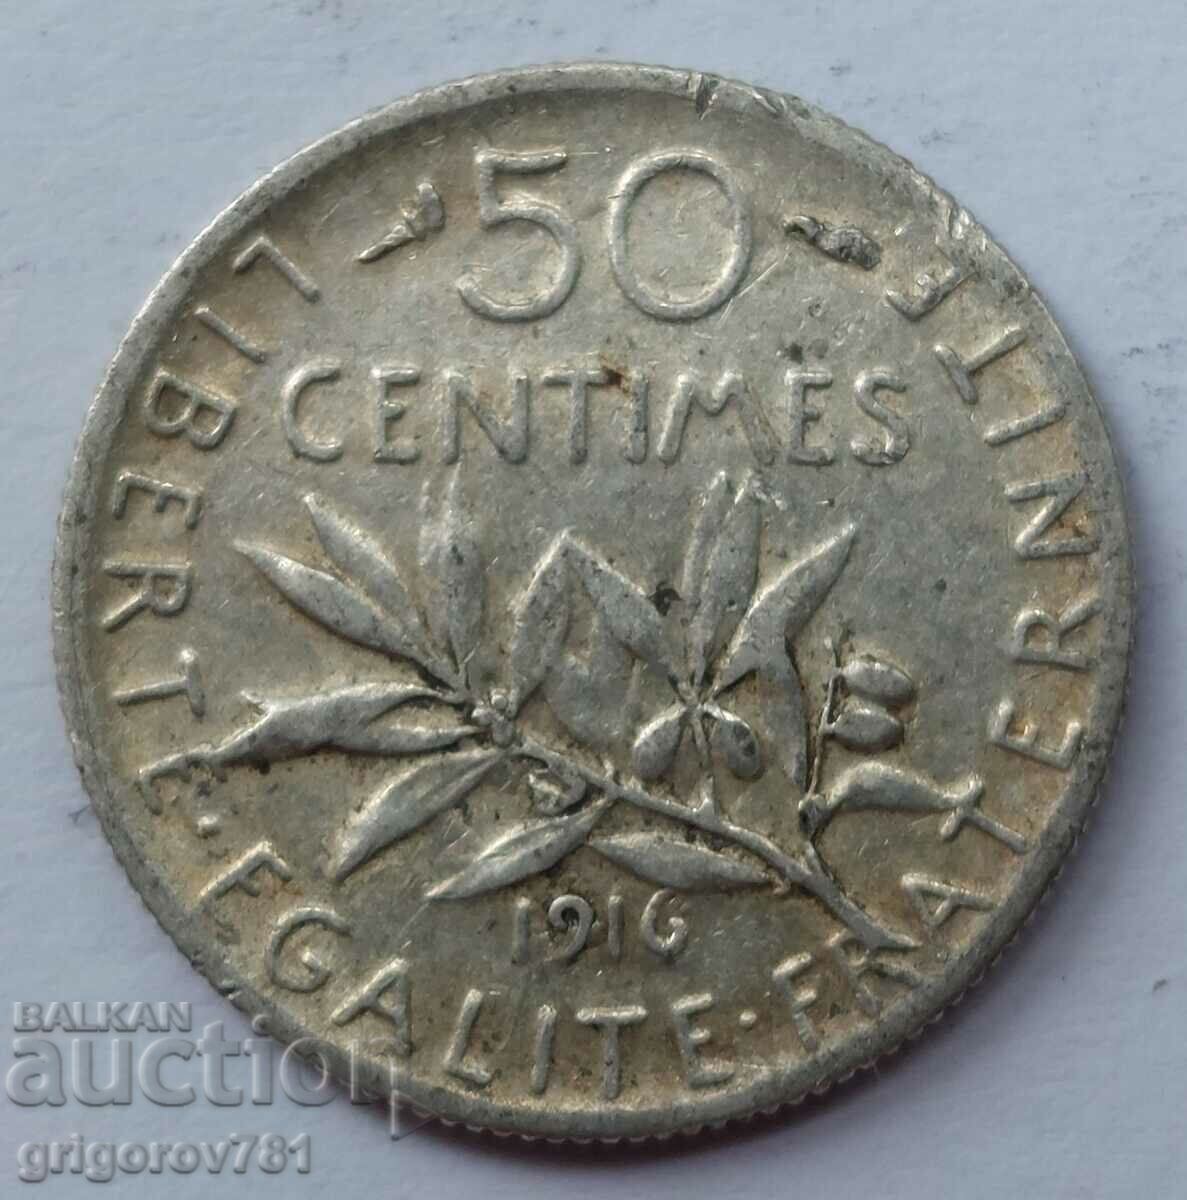 Ασημένιο 50 εκατοστά Γαλλία 1916 - ασημένιο νόμισμα №51